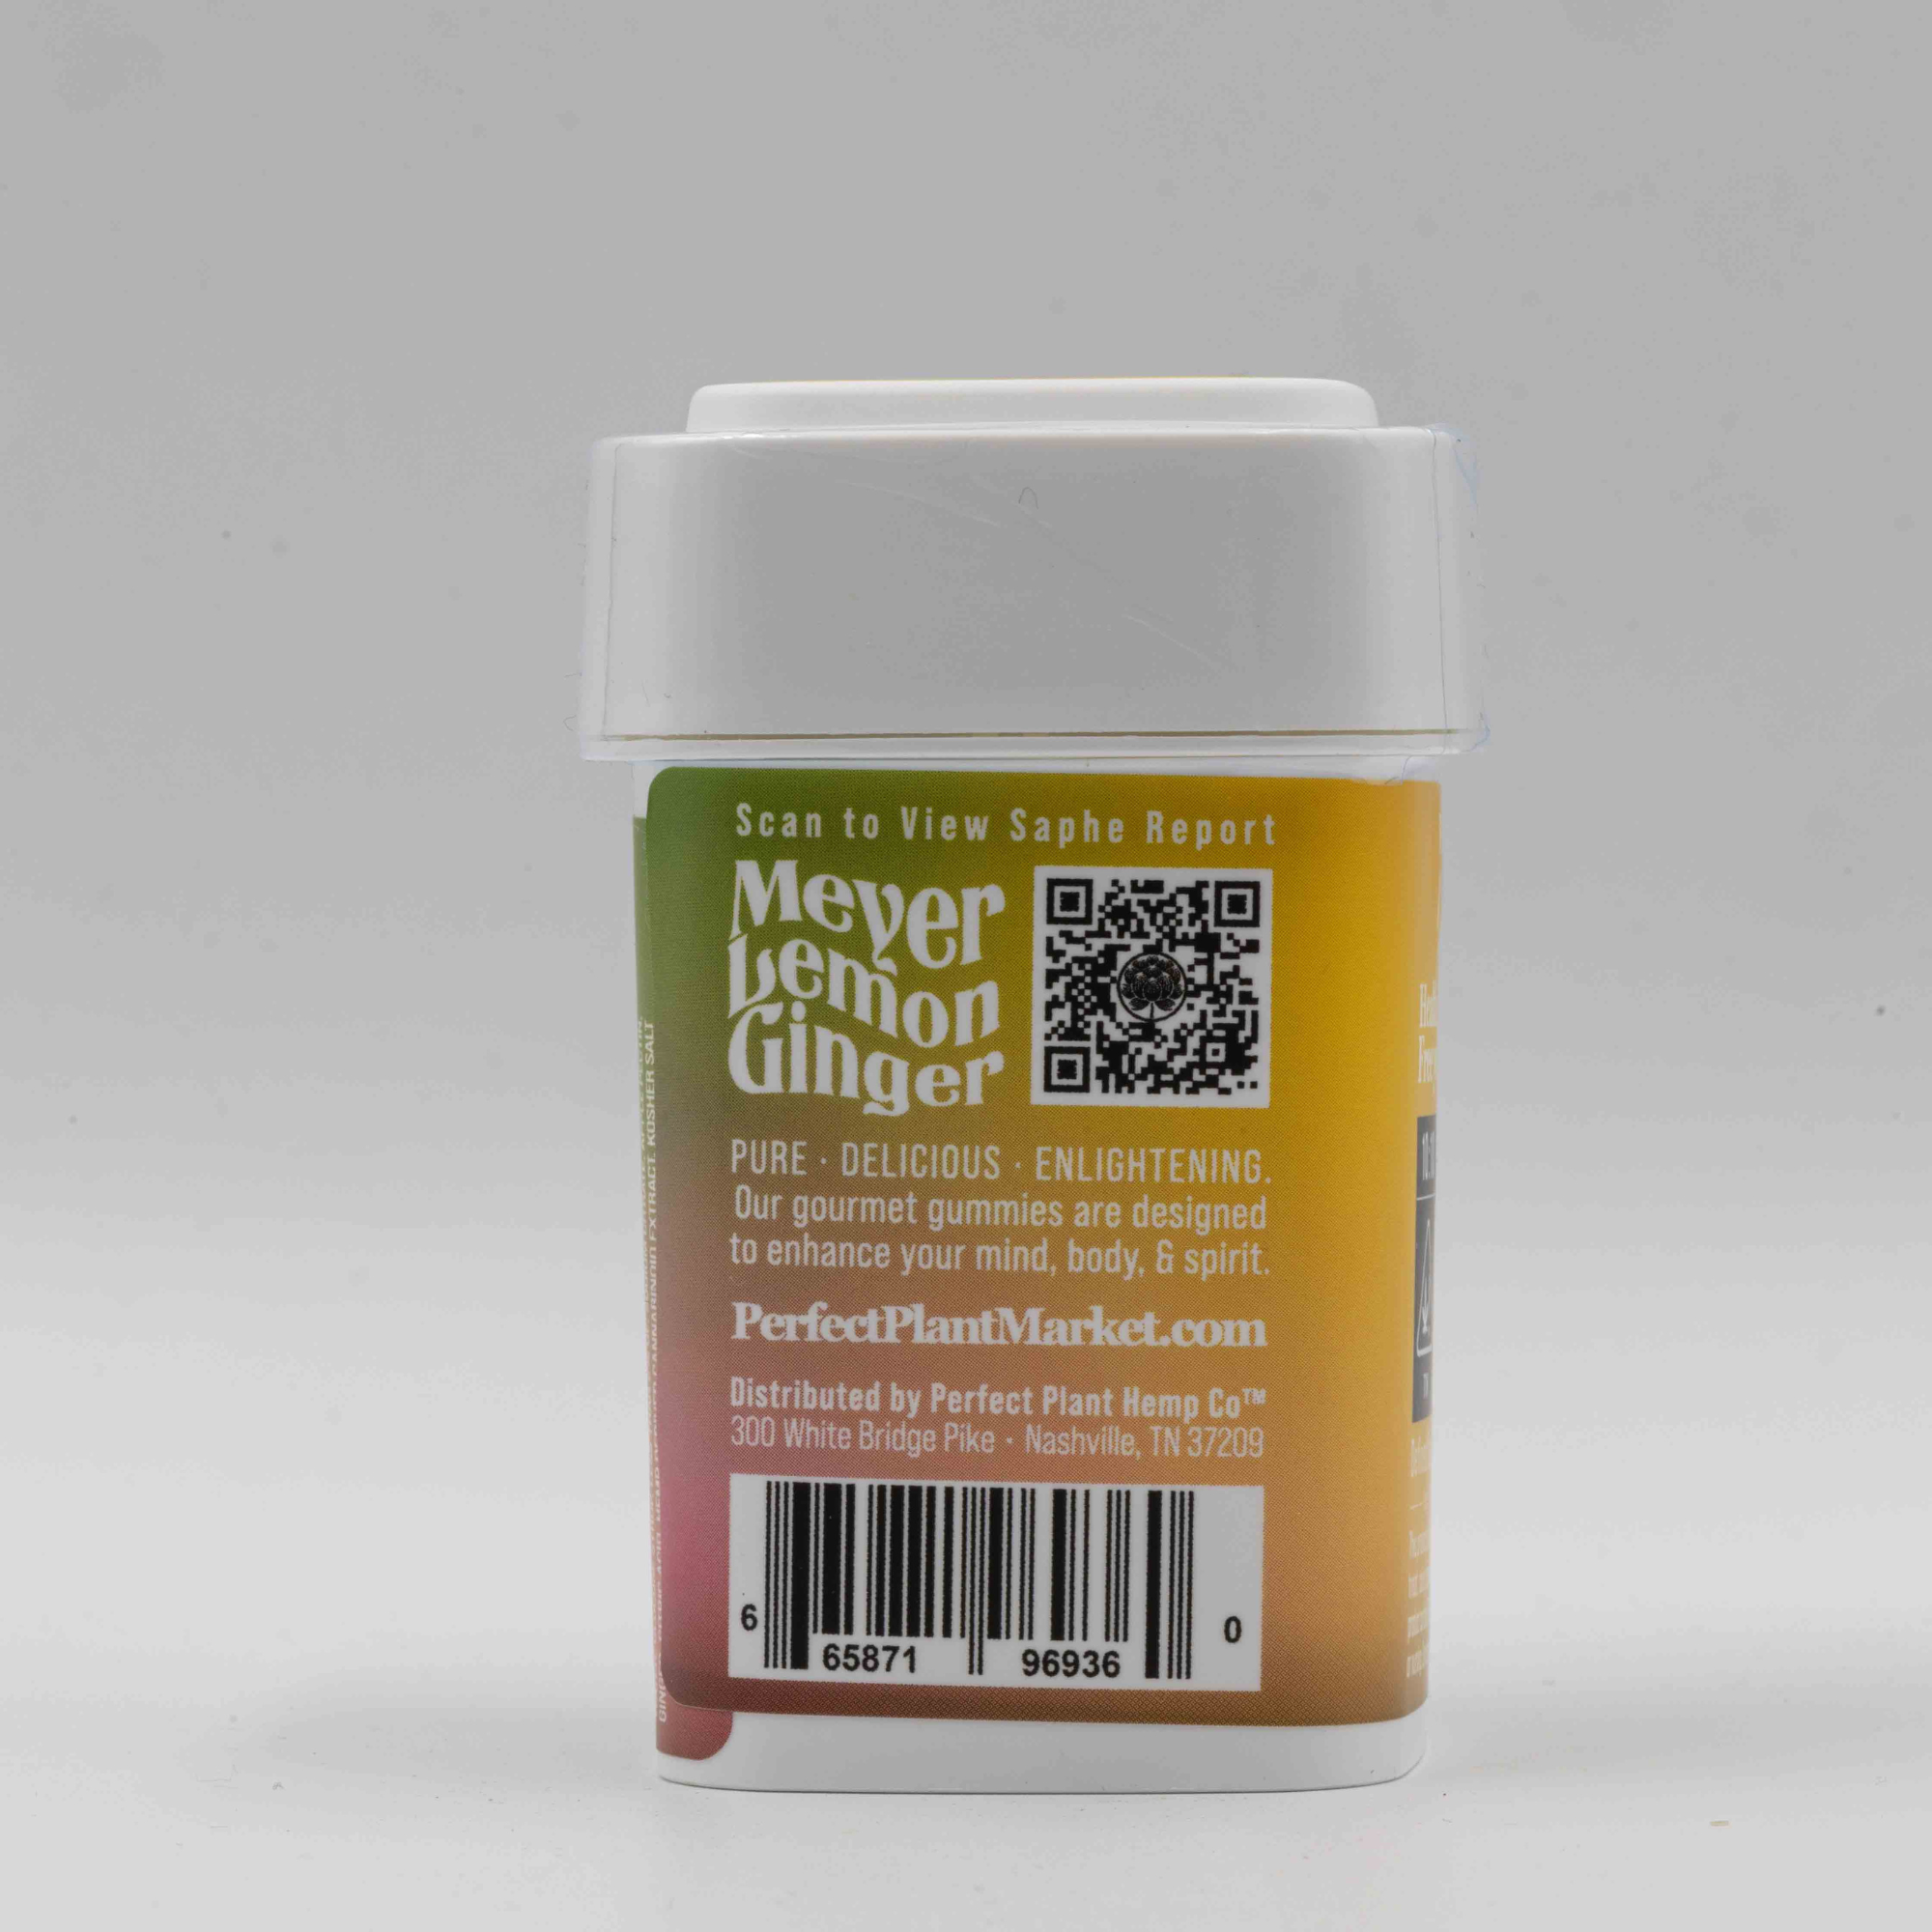 Meyer Lemon Ginger - Gourmet Gummies (10:10 CBD:THC)